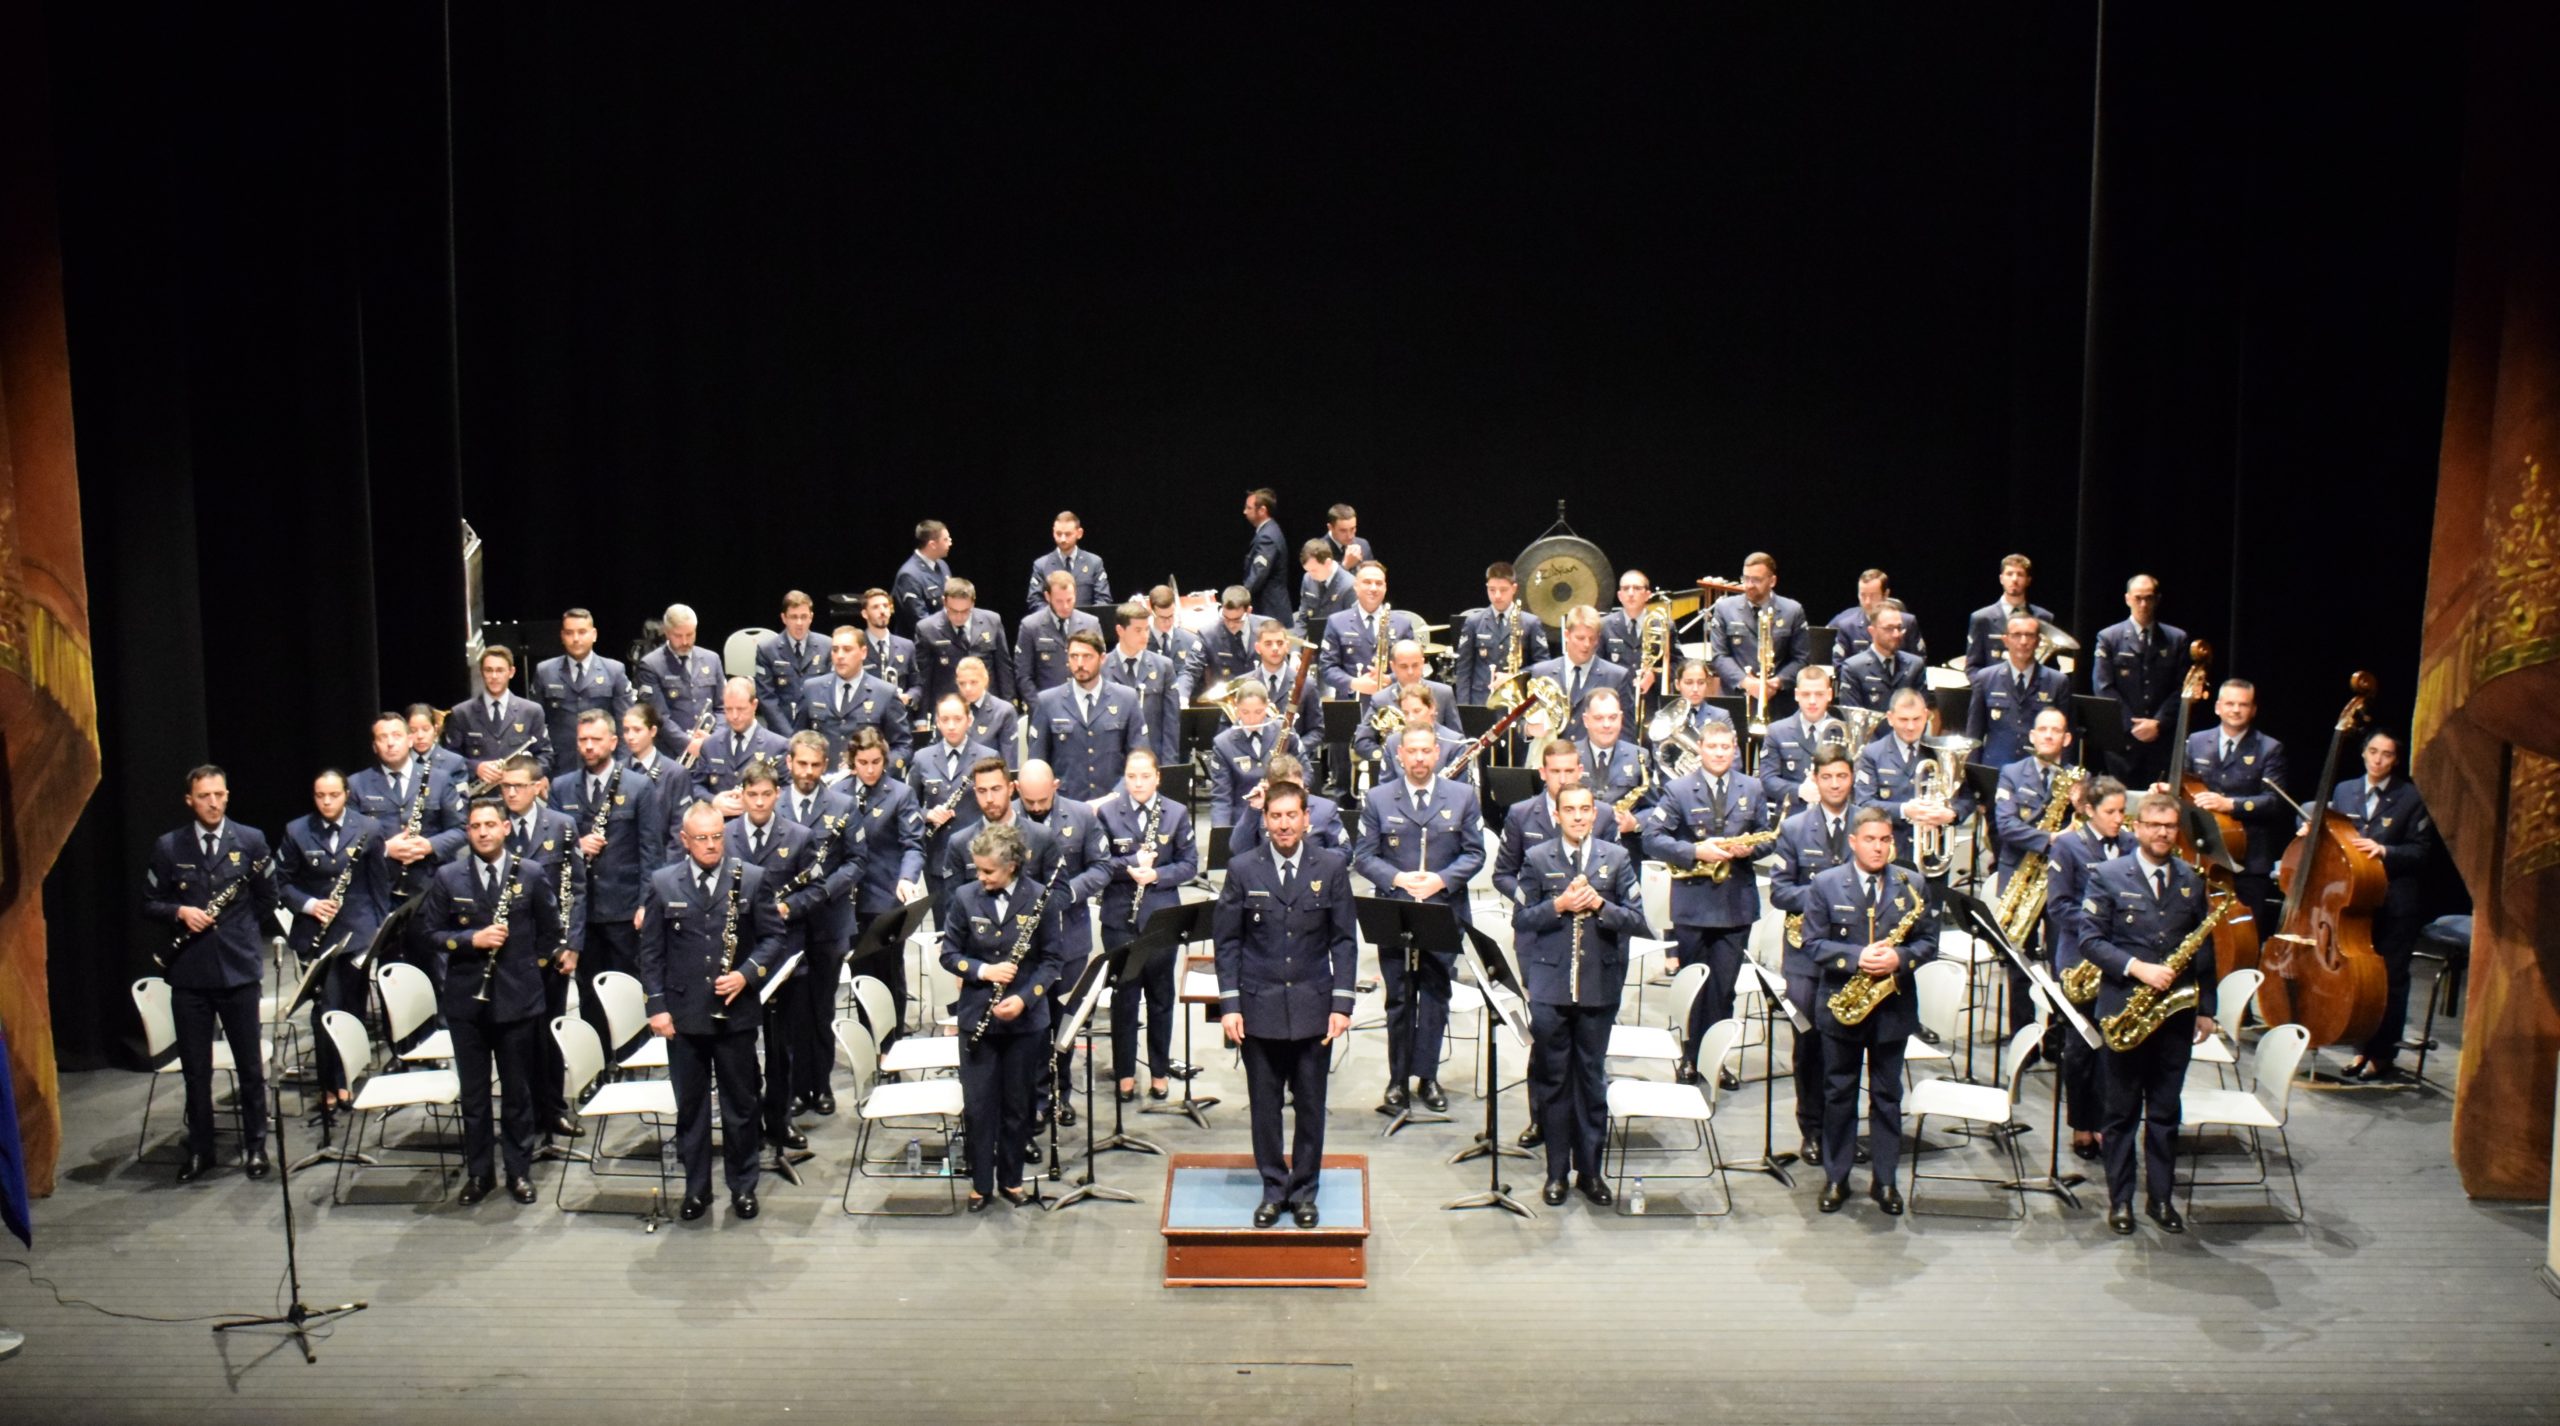 (Português) Concerto da Banda da Força Aérea Portuguesa no Teatro Garcia de Resende marcou comemorações do Centenário da Travessia Aérea do Atlântico Sul